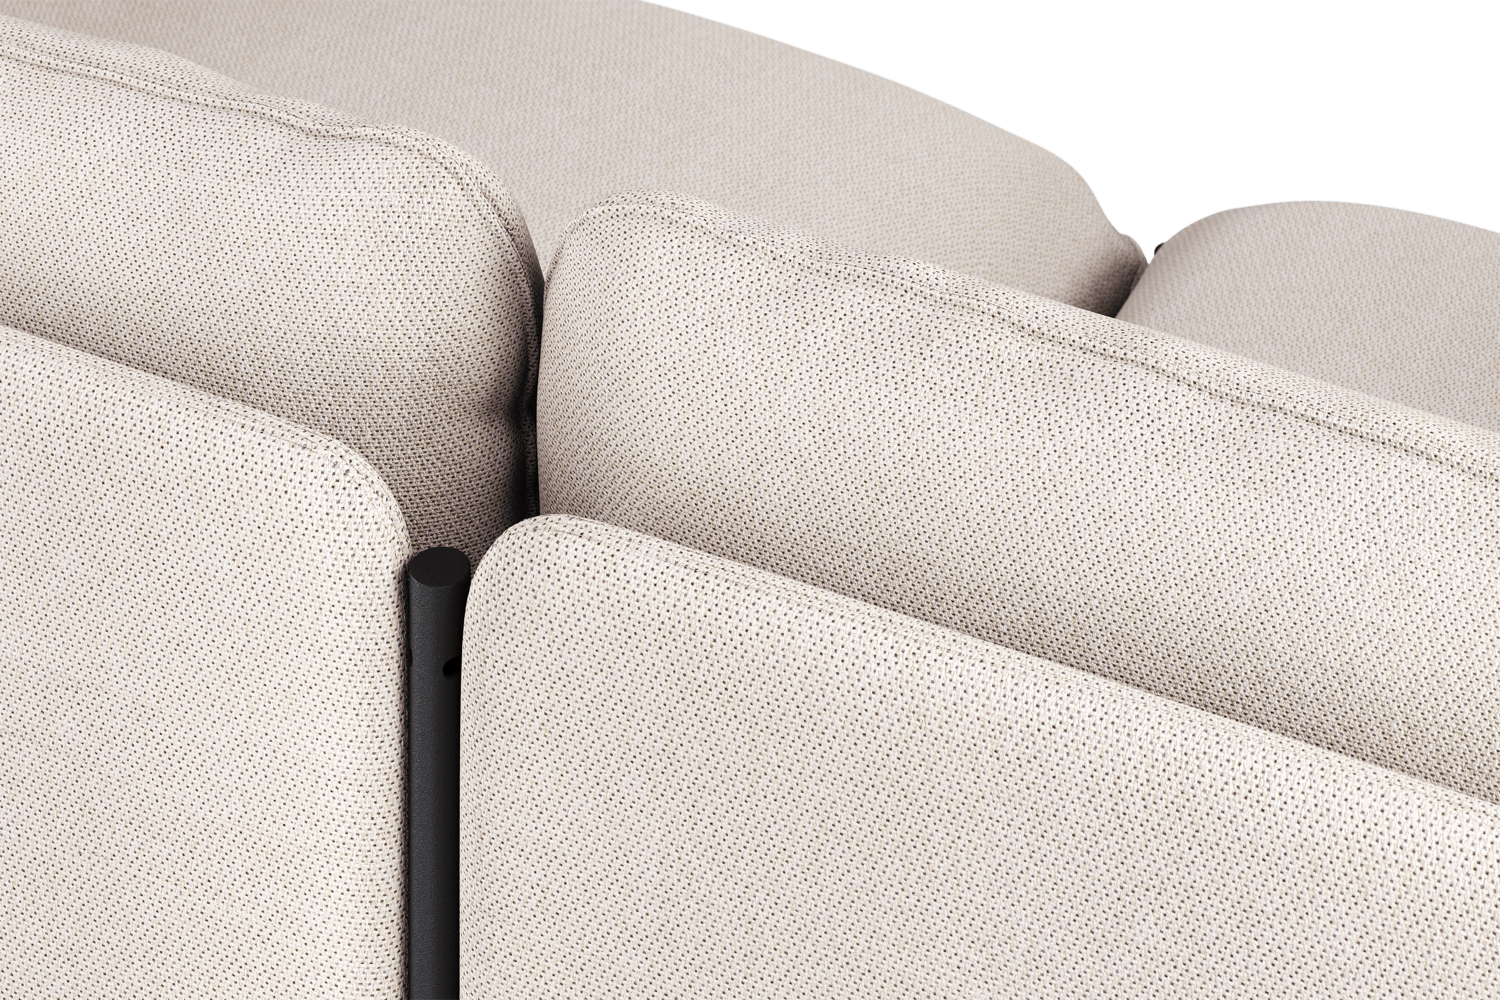 Toom Modular Sofa 3-Sitzer Konfiguration 2 in Oatmilk Beige  präsentiert im Onlineshop von KAQTU Design AG. 3er Sofa ist von Noo.ma